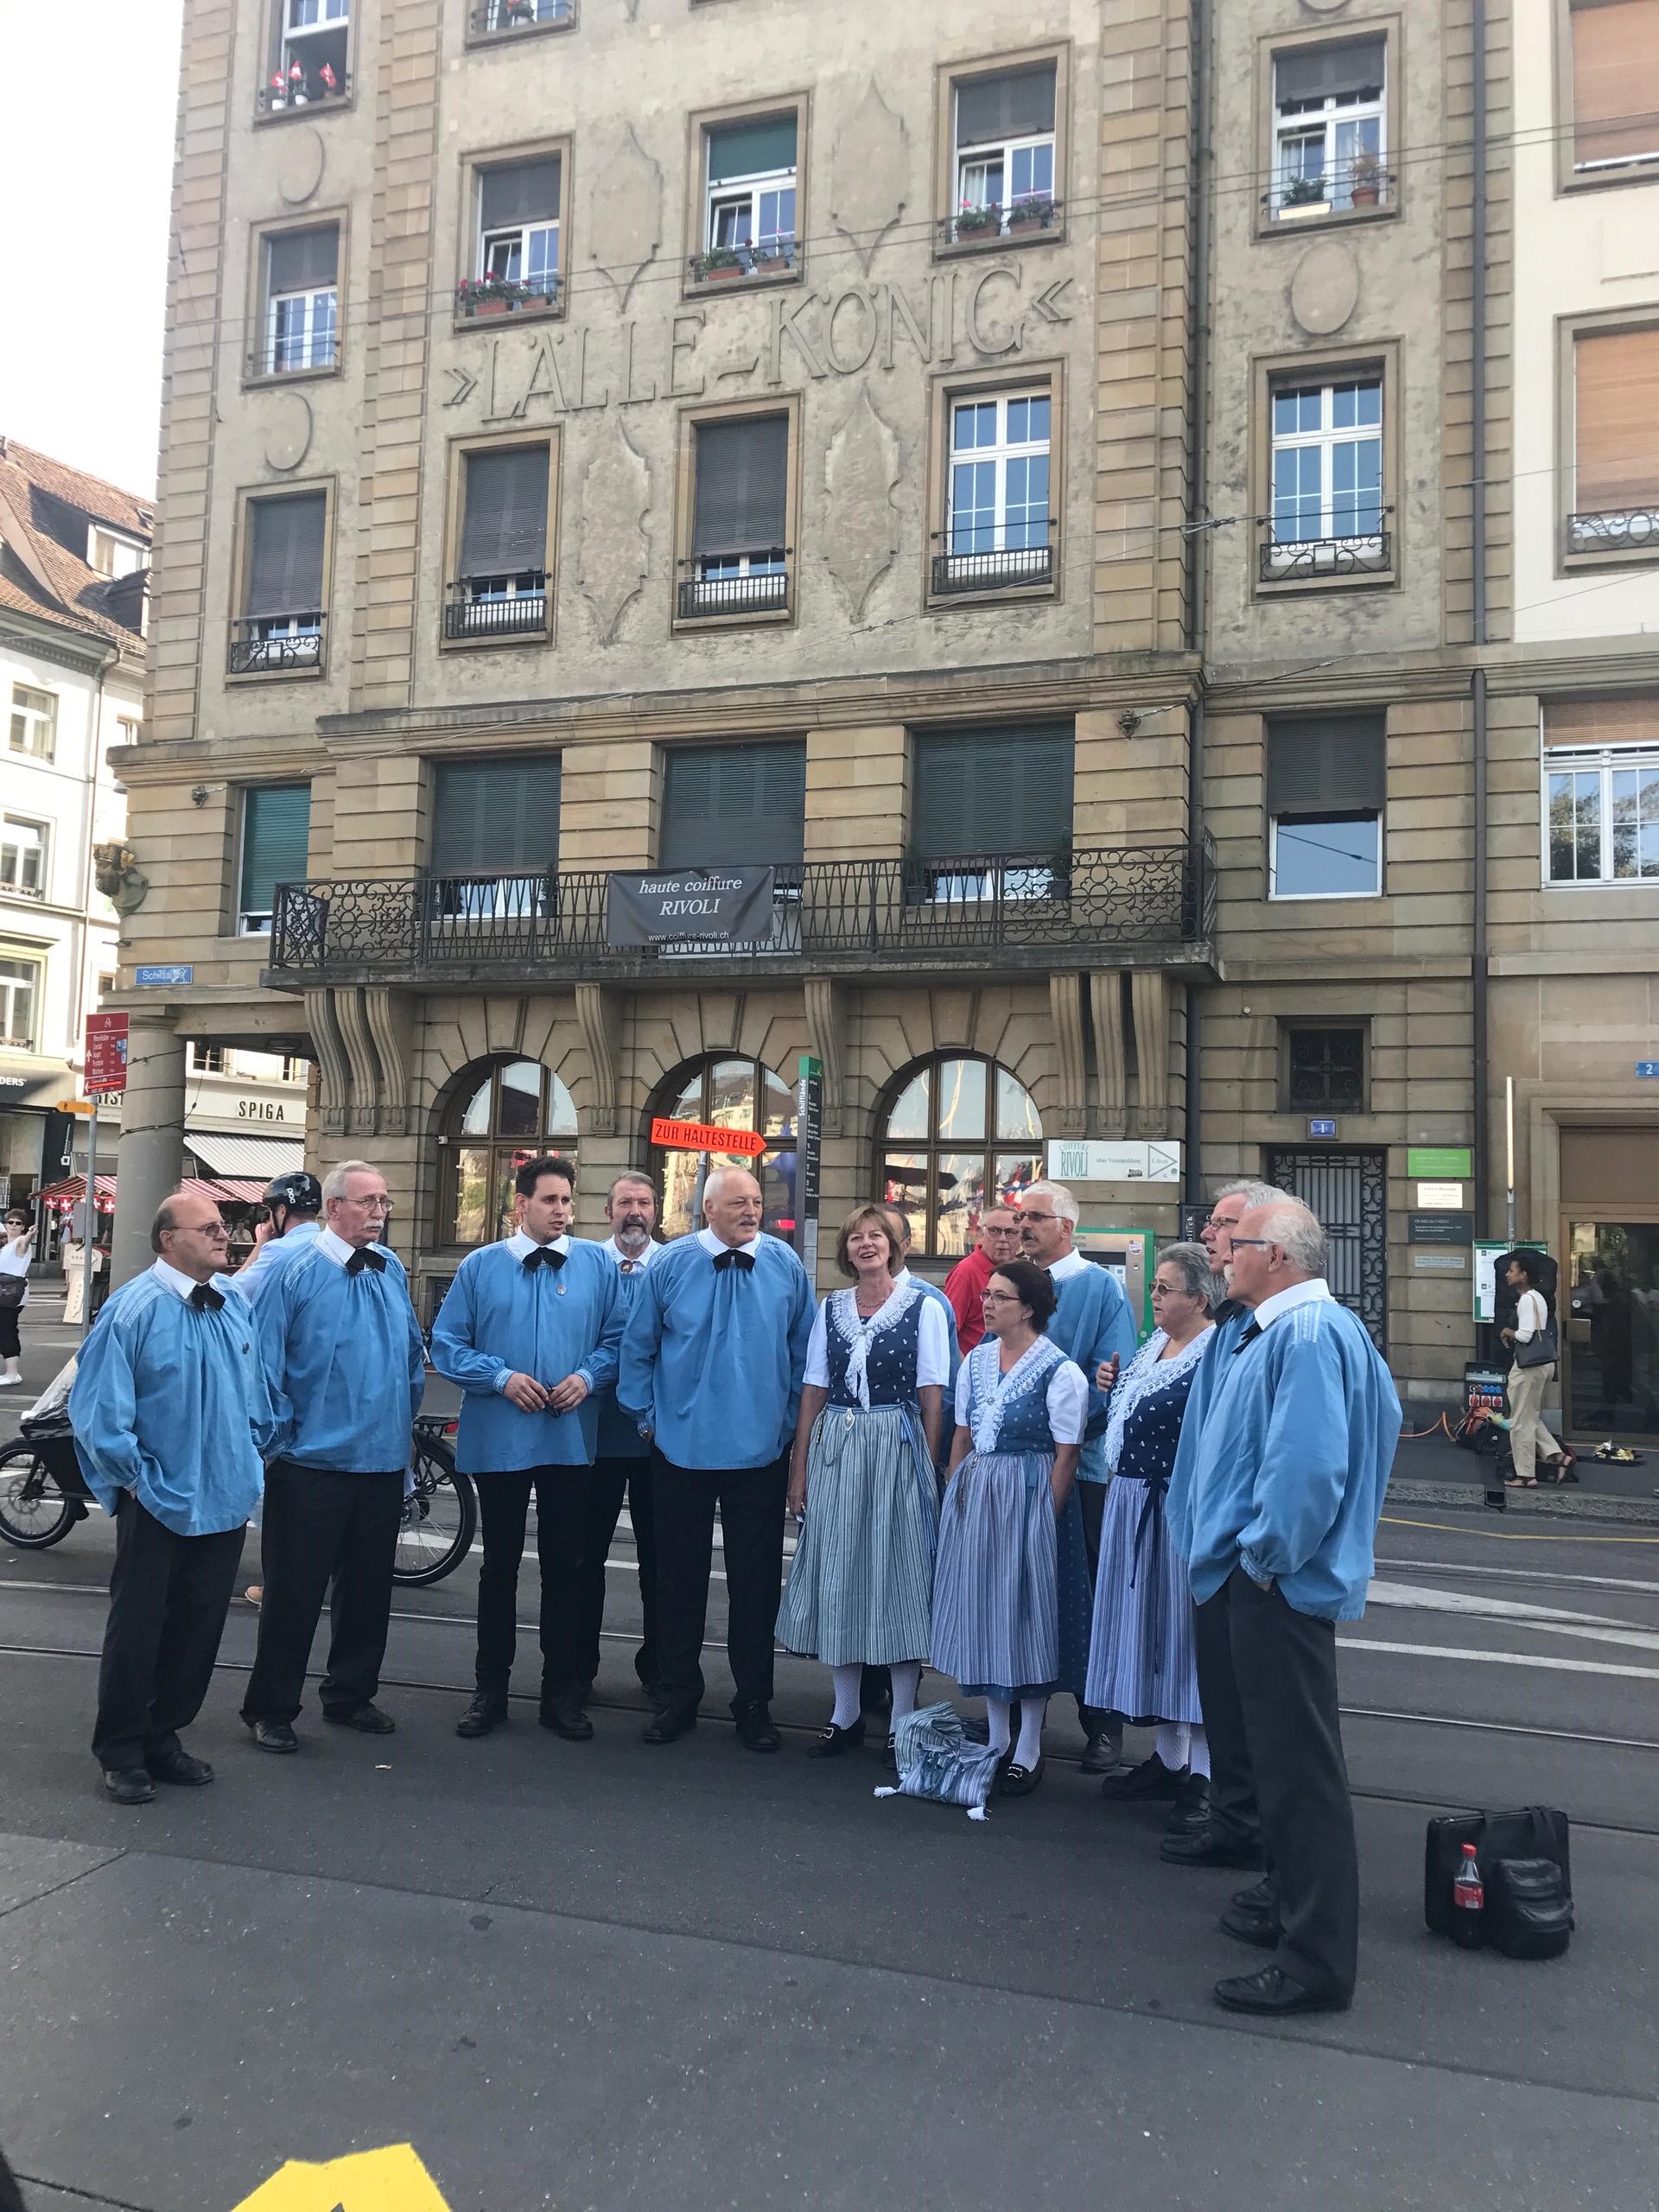 在巴塞尔的这段期间正好也赶上了瑞士国庆节，街头人潮涌动热闹非凡，还可以围观各种瑞士传统表演—约德尔、阿尔卑斯长号、还有焰火表演。